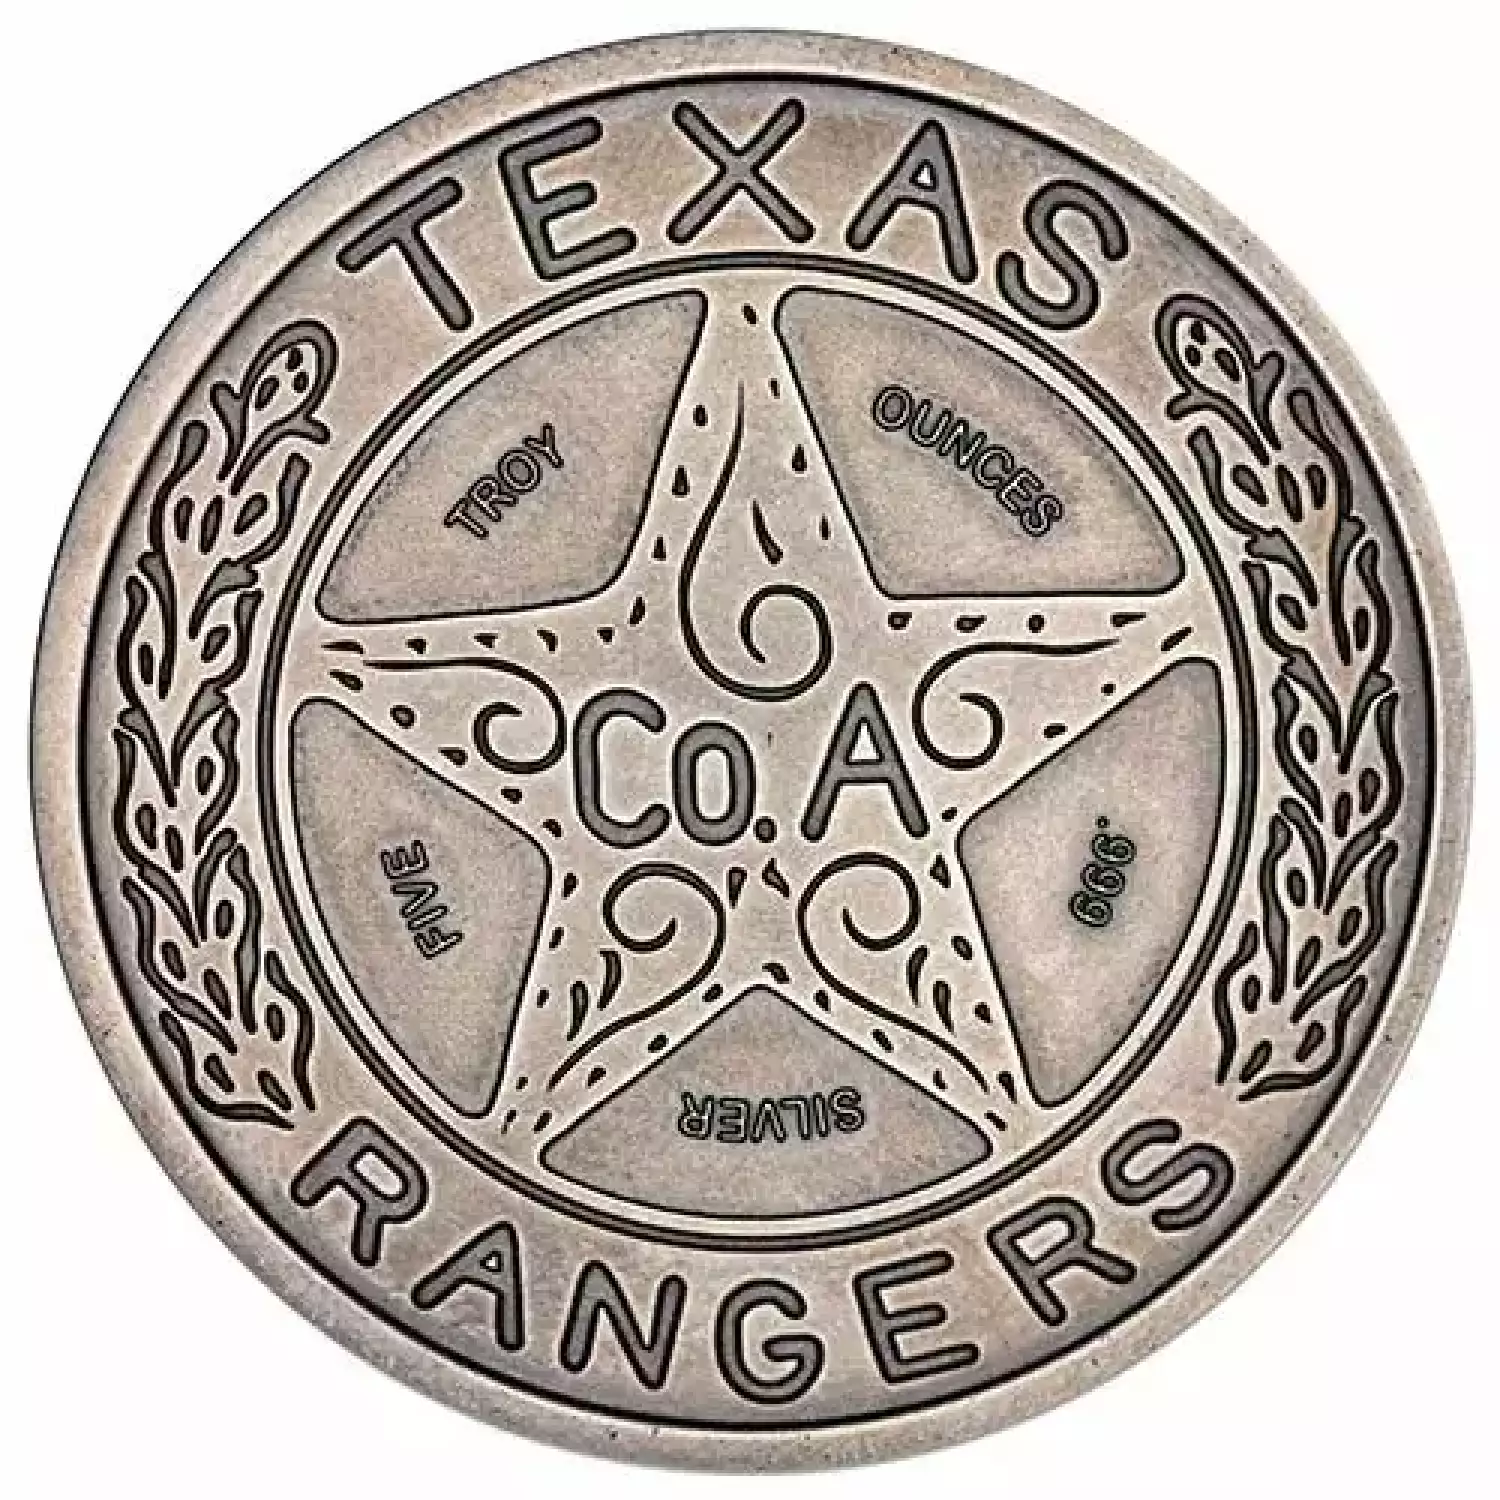 Texas Rangers Color Emblem